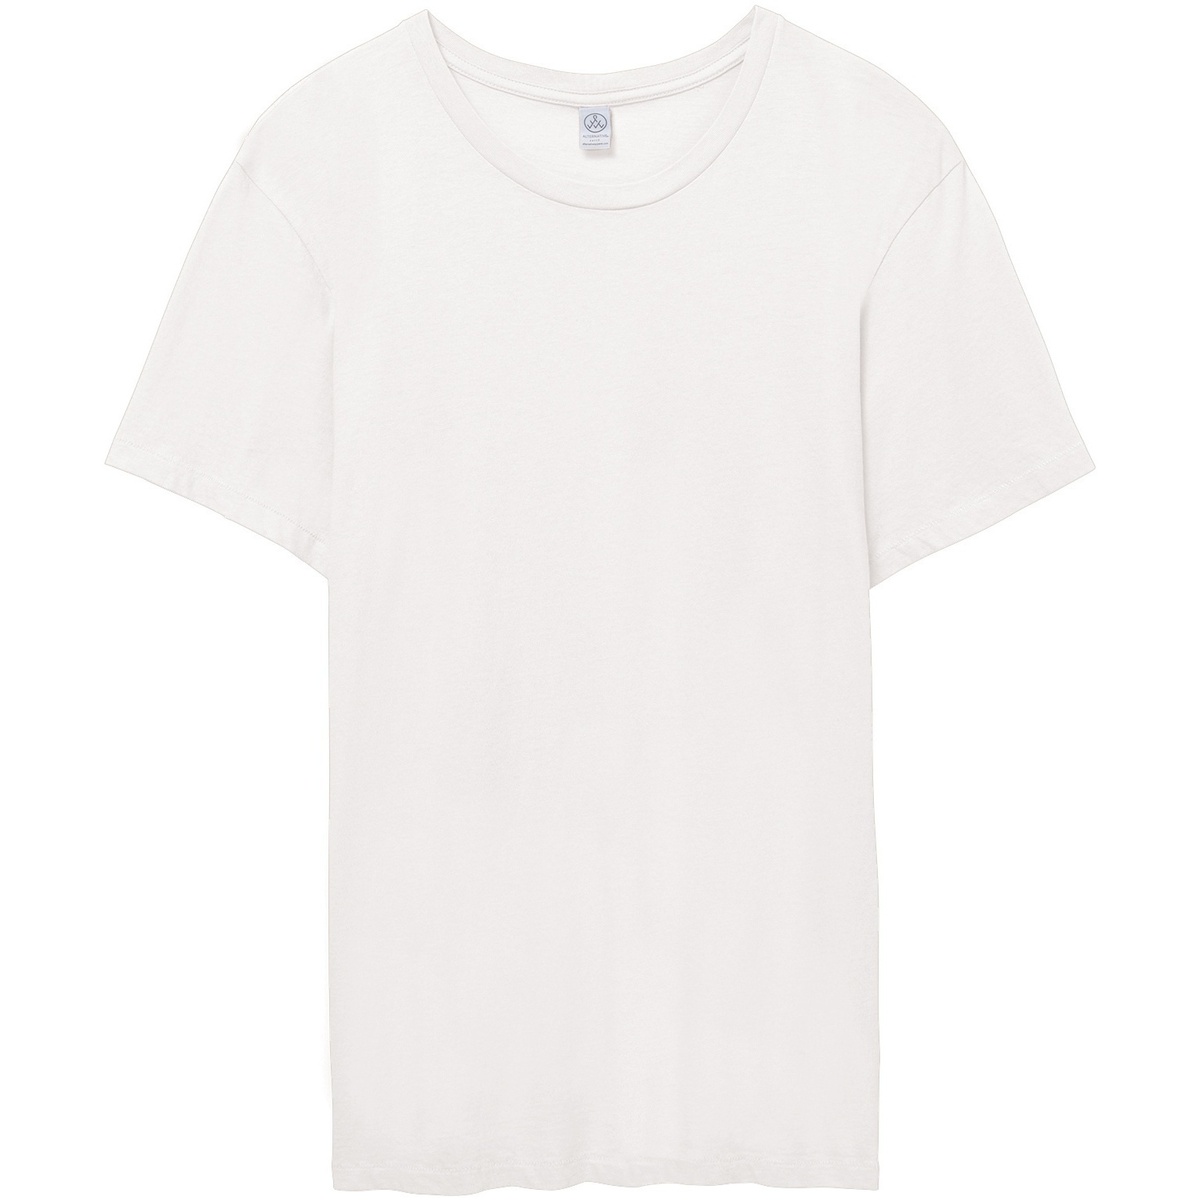 Abbigliamento Uomo T-shirts a maniche lunghe Alternative Apparel AT015 Bianco